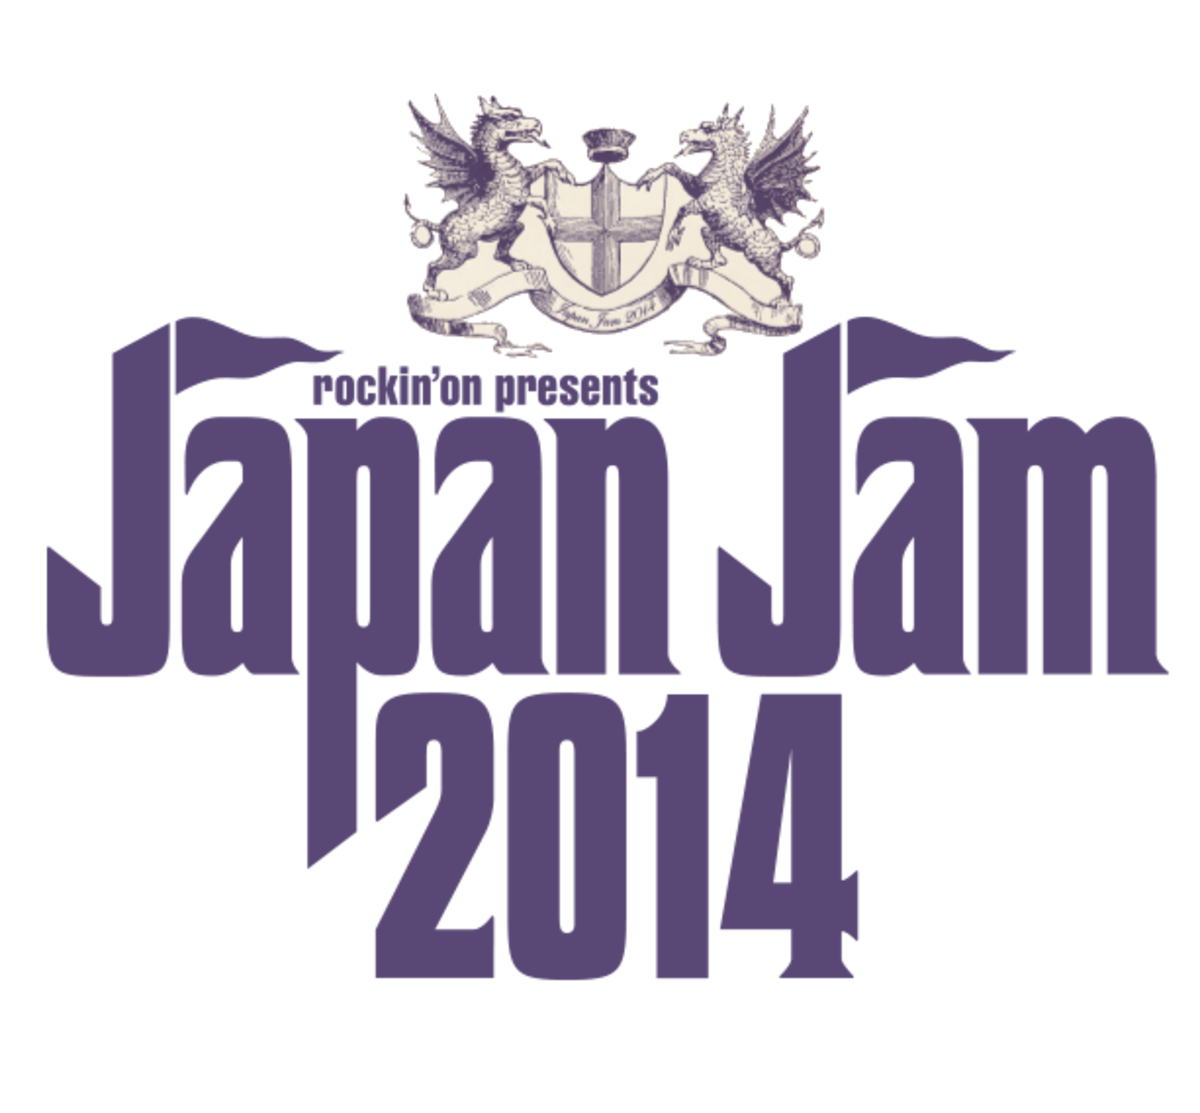 Japan Jam 14 第2弾アーティストとしてクリープハイプの出演を発表